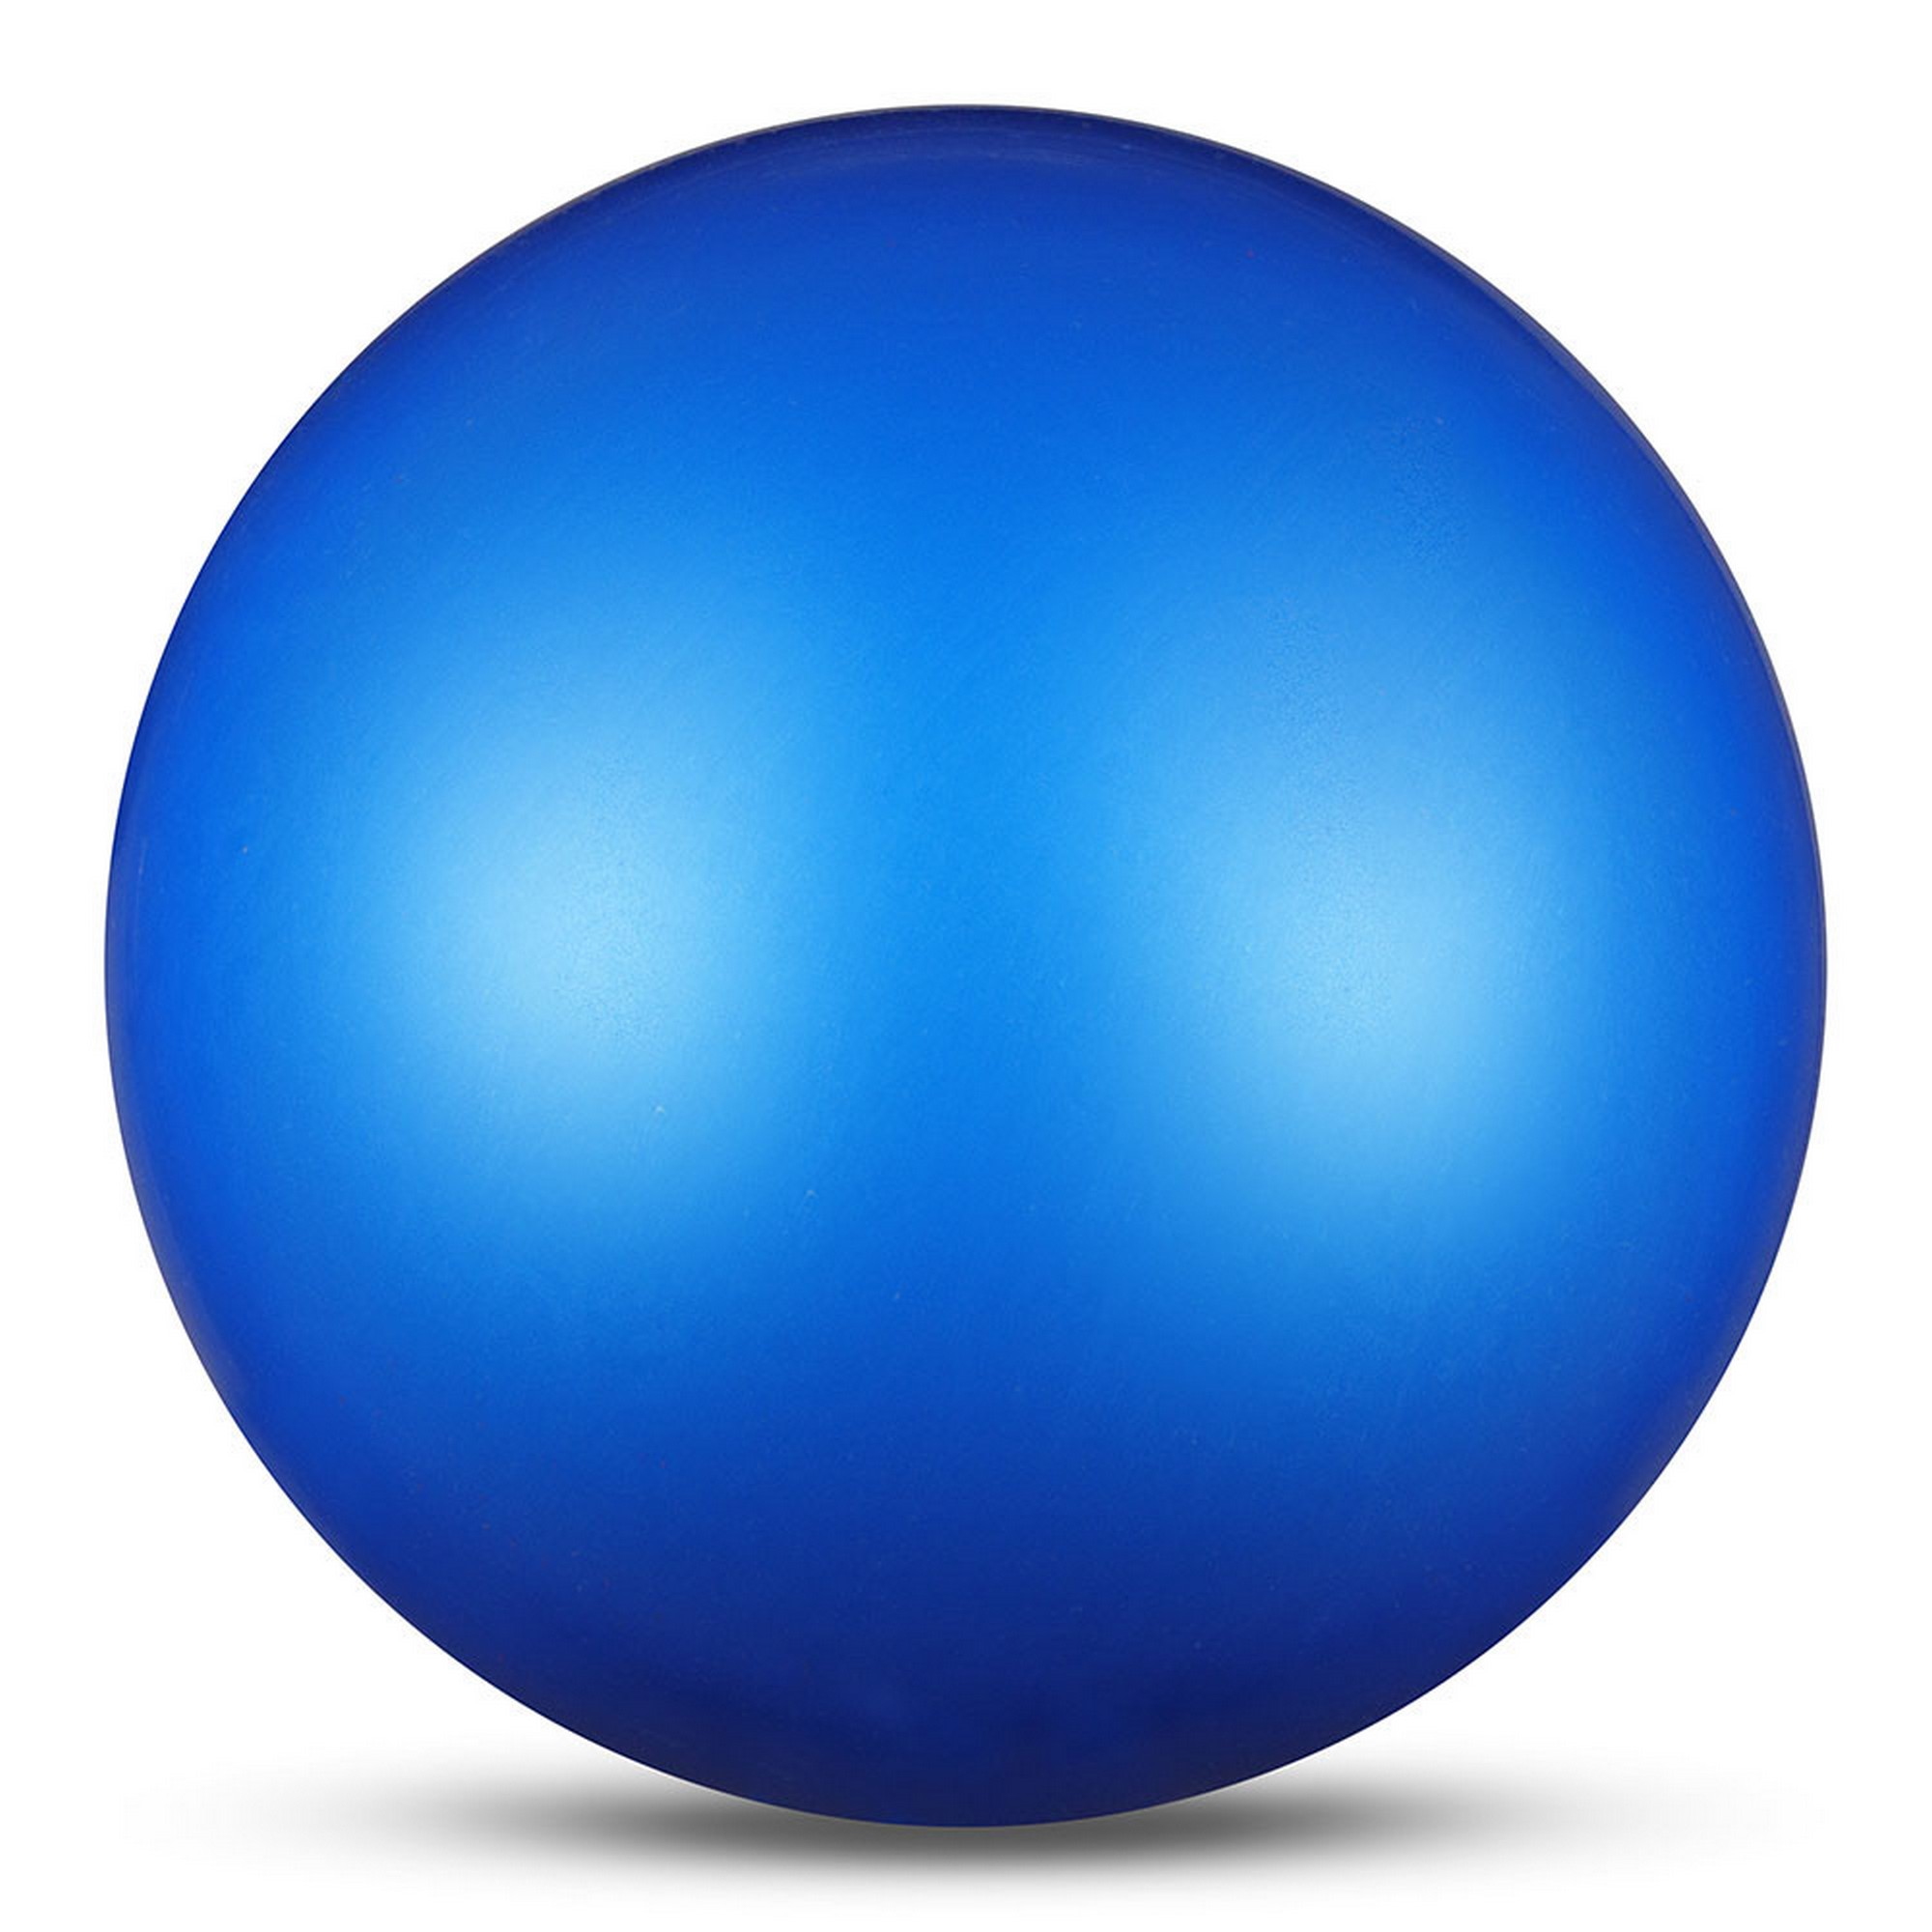 Мяч для художественной гимнастики d15см Indigo ПВХ IN315-B синий металлик